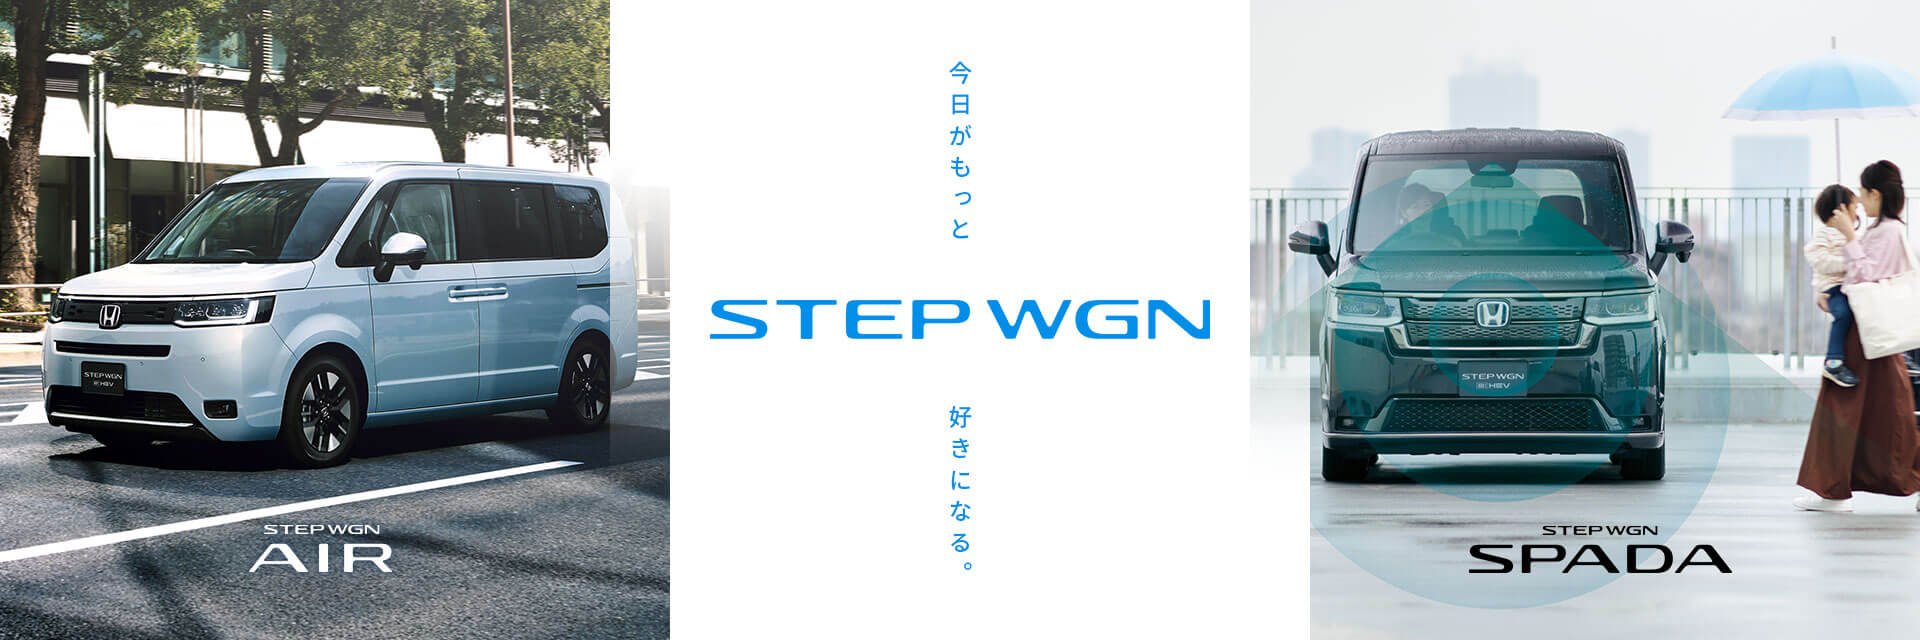 STEP WGN